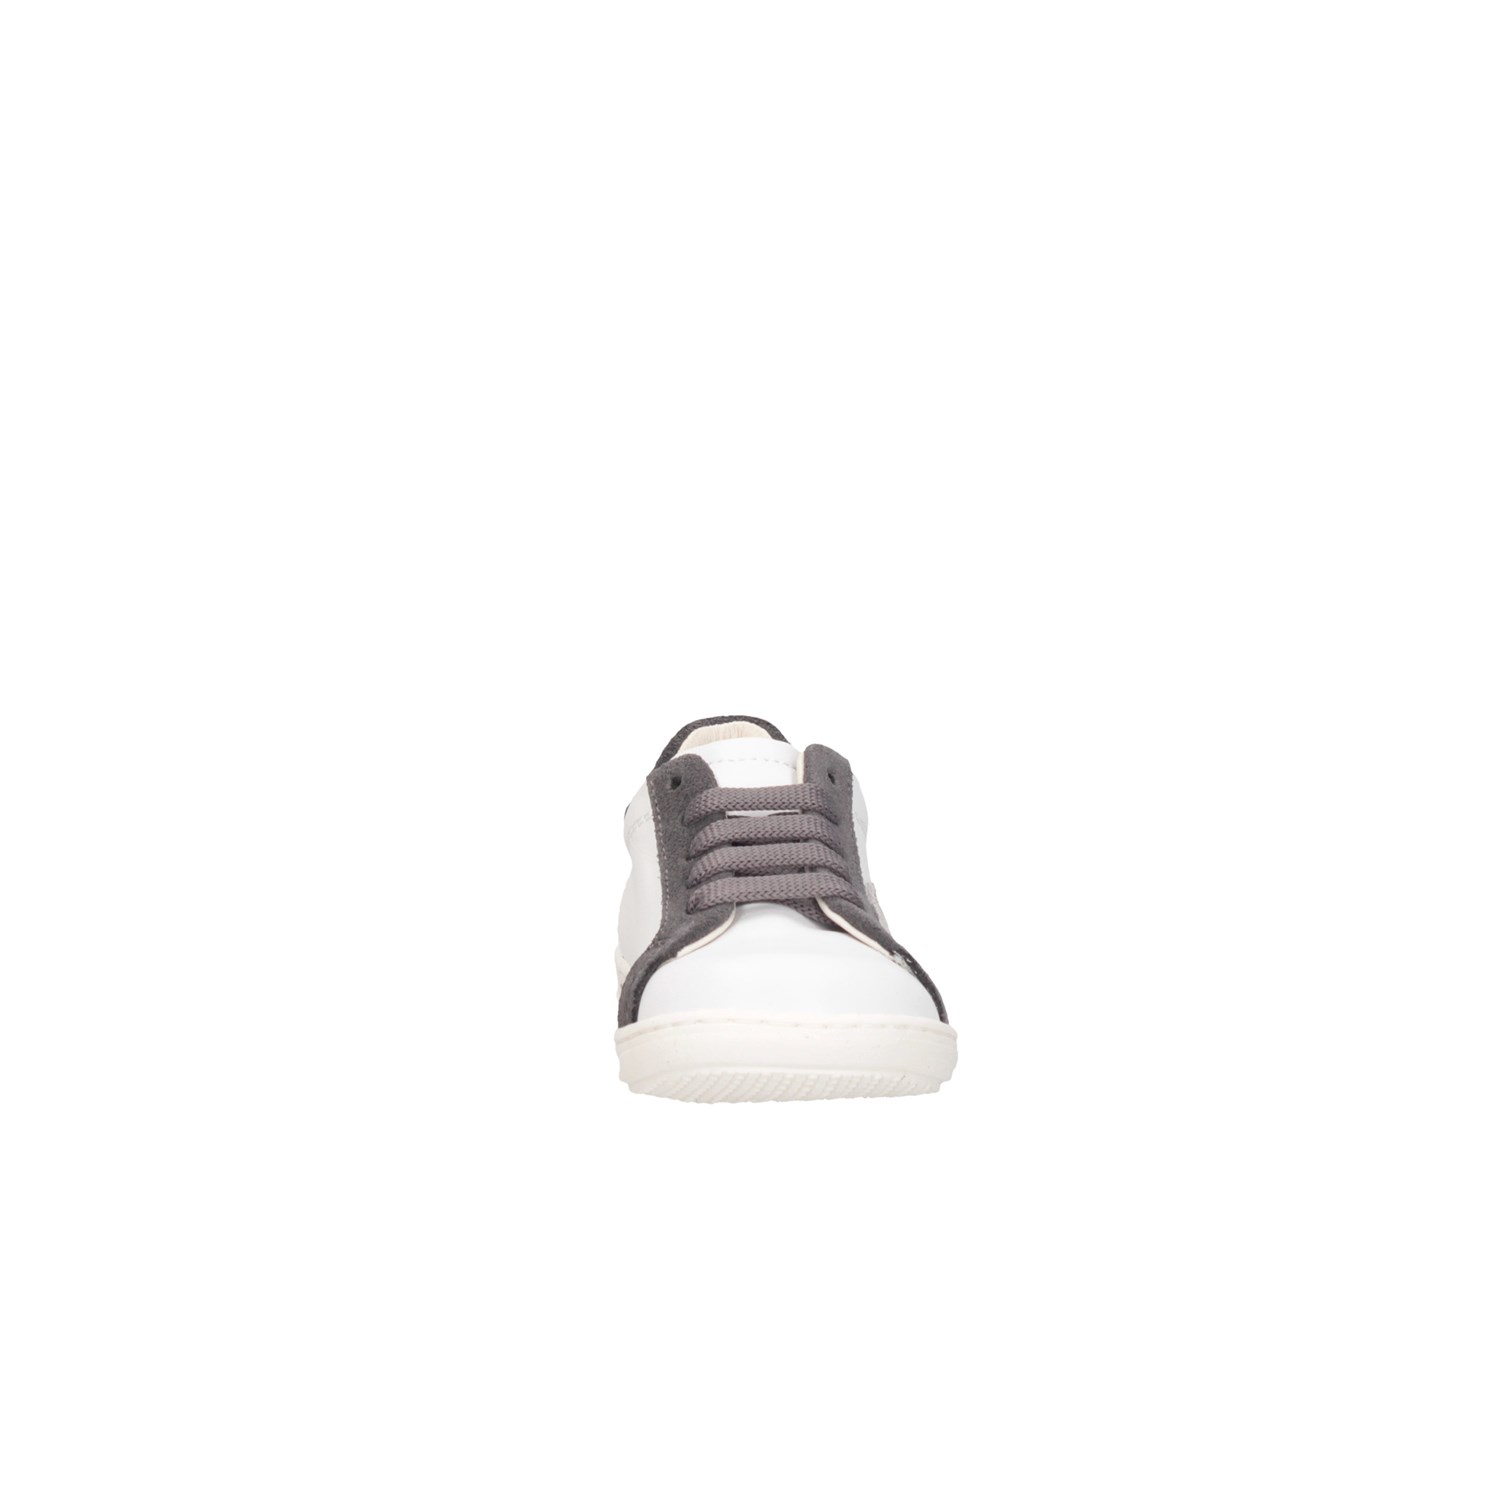 Gioiecologiche 5131 White / Gray Shoes Child 